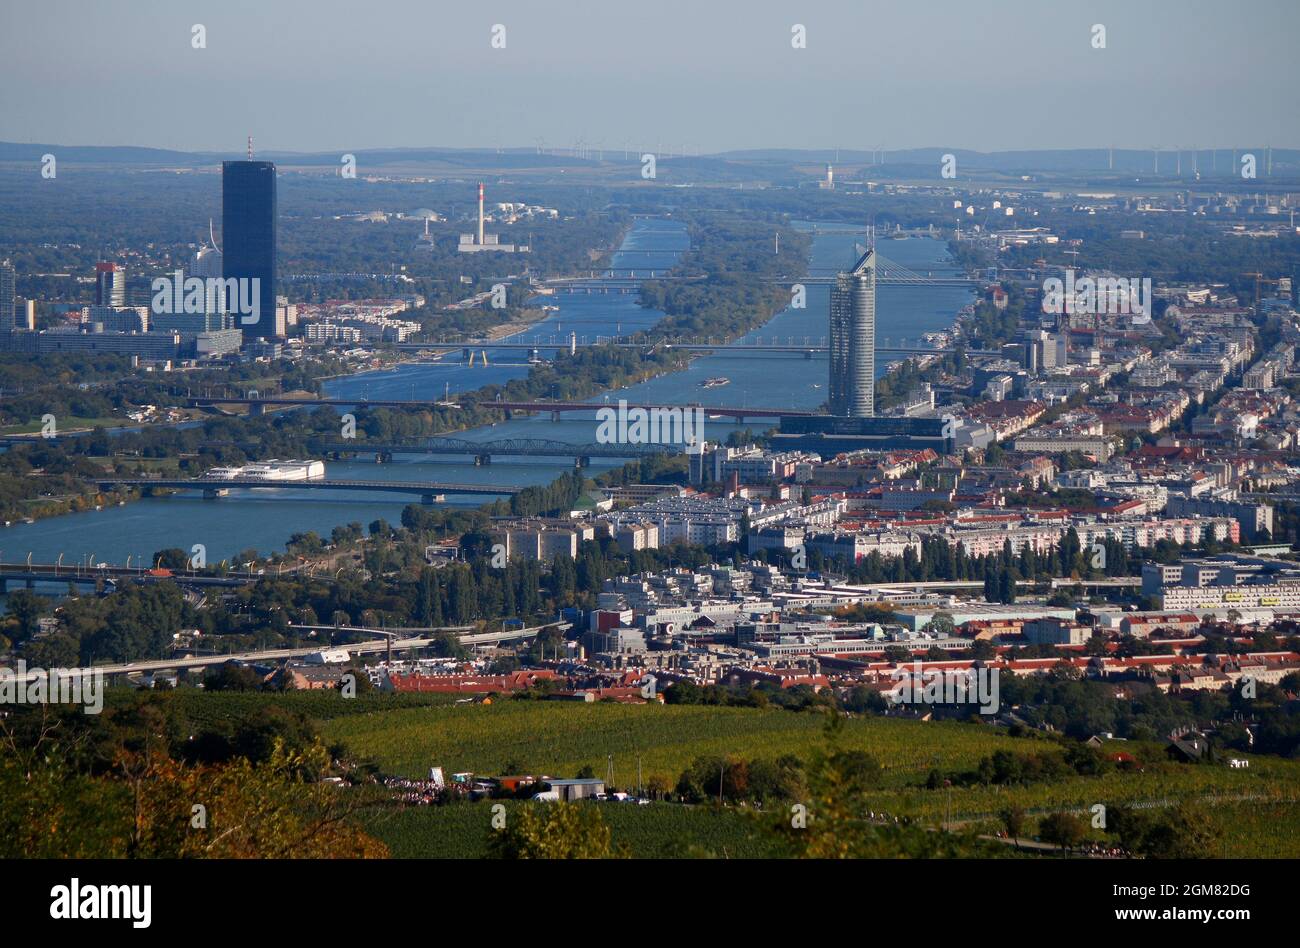 Luftbild : Donau/ Danube, DC, tour du millénaire, Tour d'Horizon, Wien, Österreich/ Vienne, Autriche (nur für redaktionelle Verwendung. Keine Werbung. Re Banque D'Images